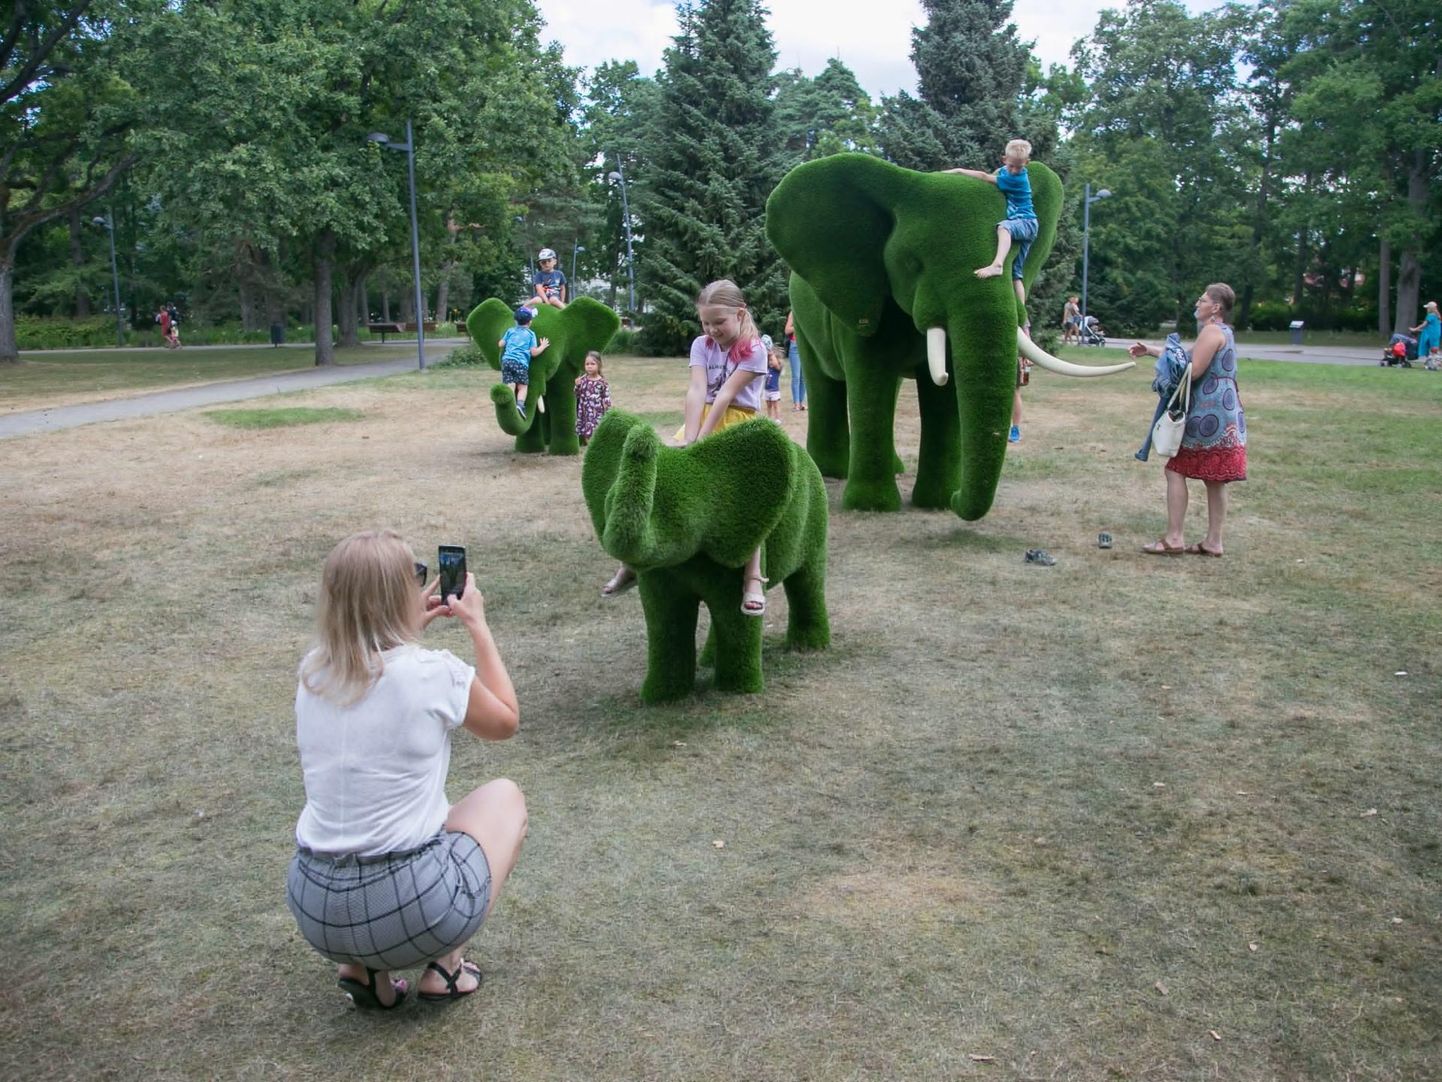 Kunstmurust elevandid on populaarsed turnimisatraktsioonid.